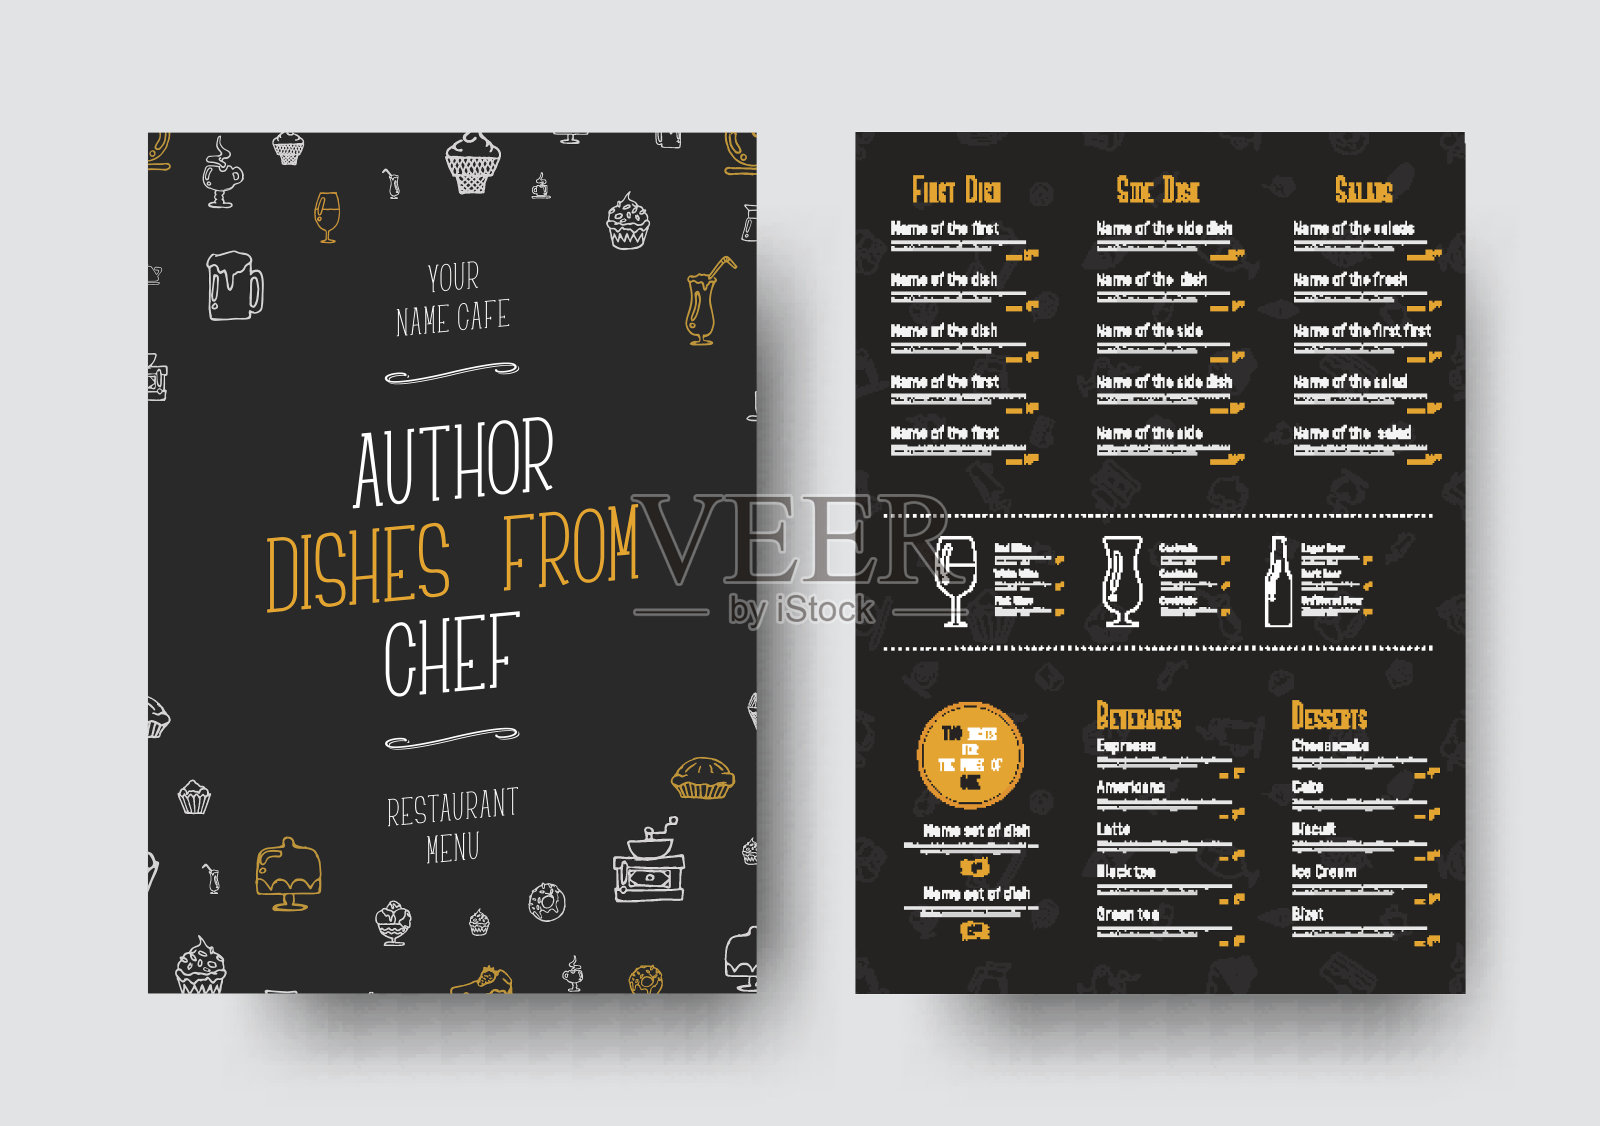 为餐厅或咖啡馆设计A4大小的黑色菜单设计模板素材